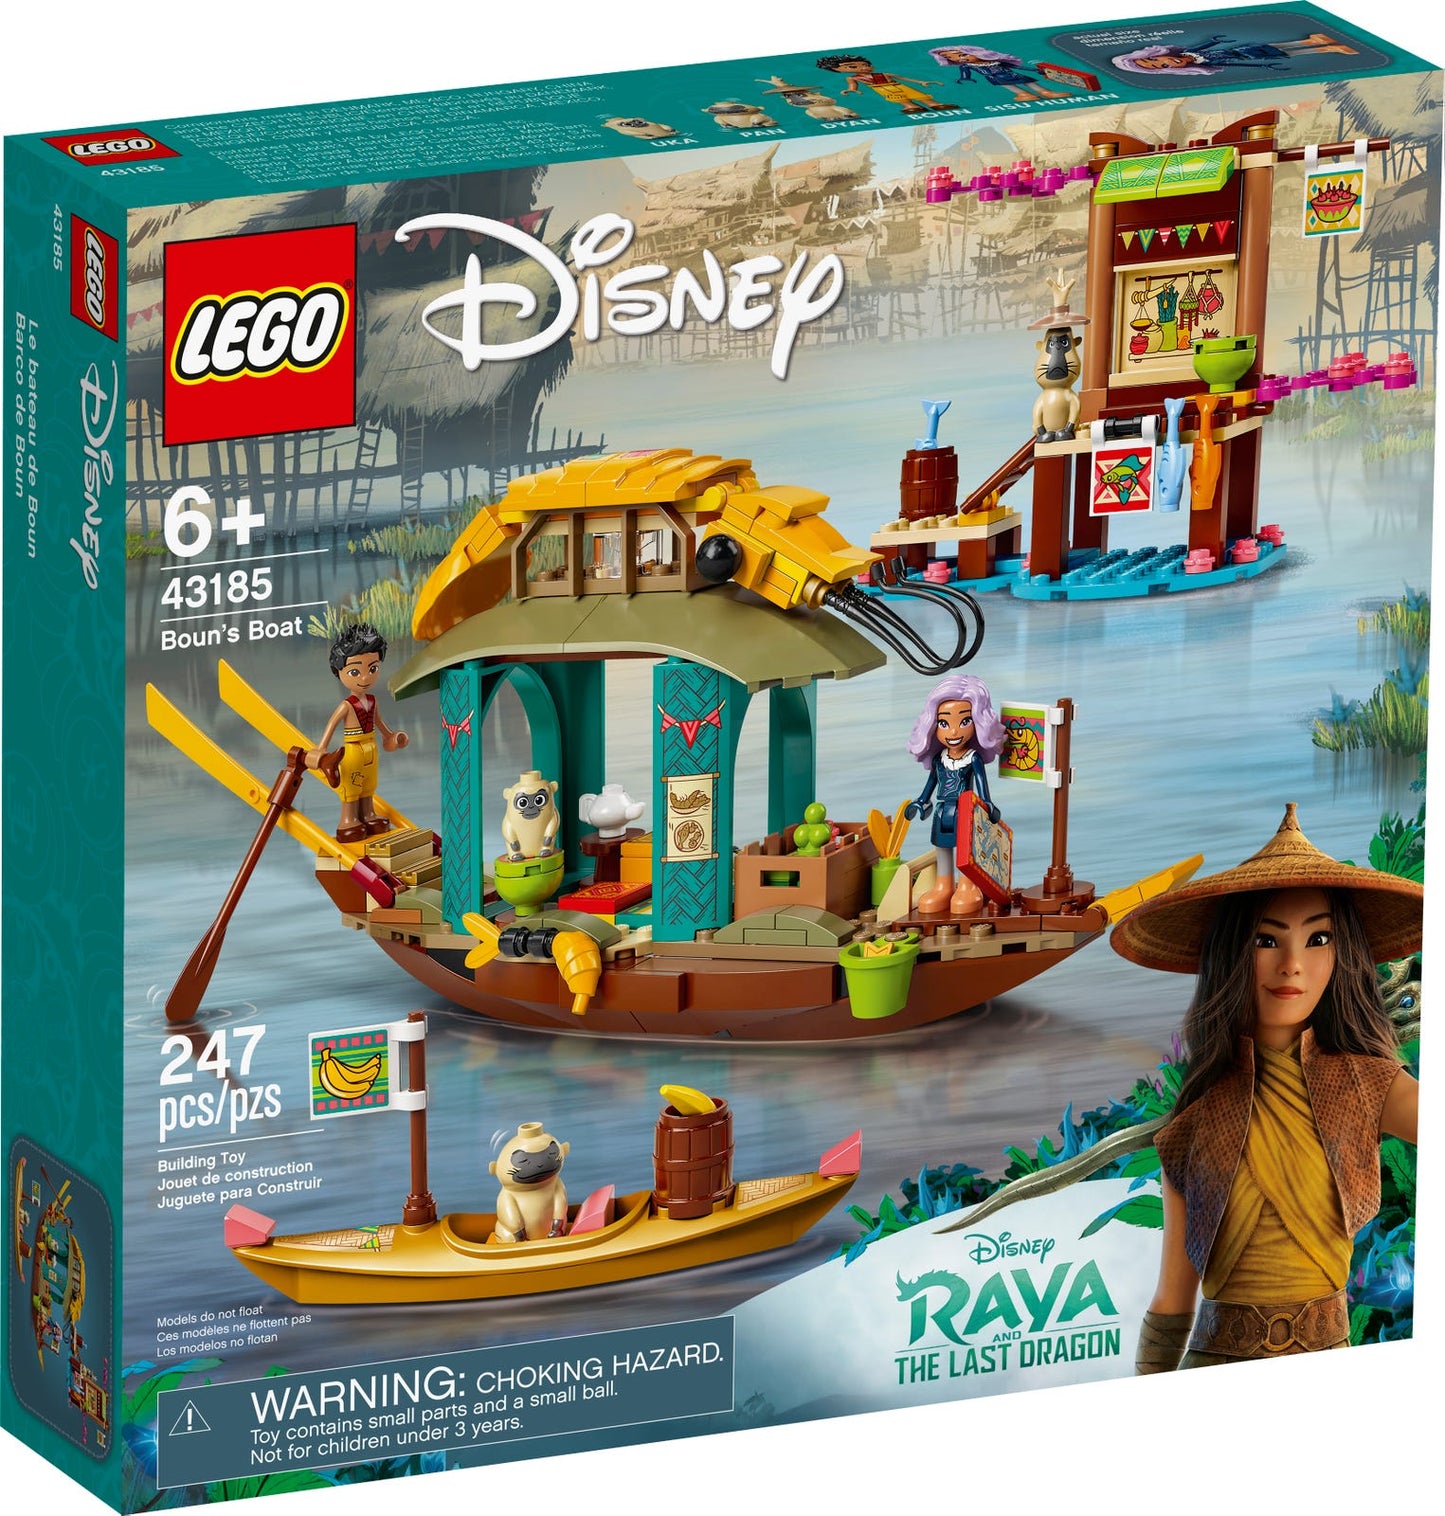 Lego Disney Raya Boun's Boat 43185